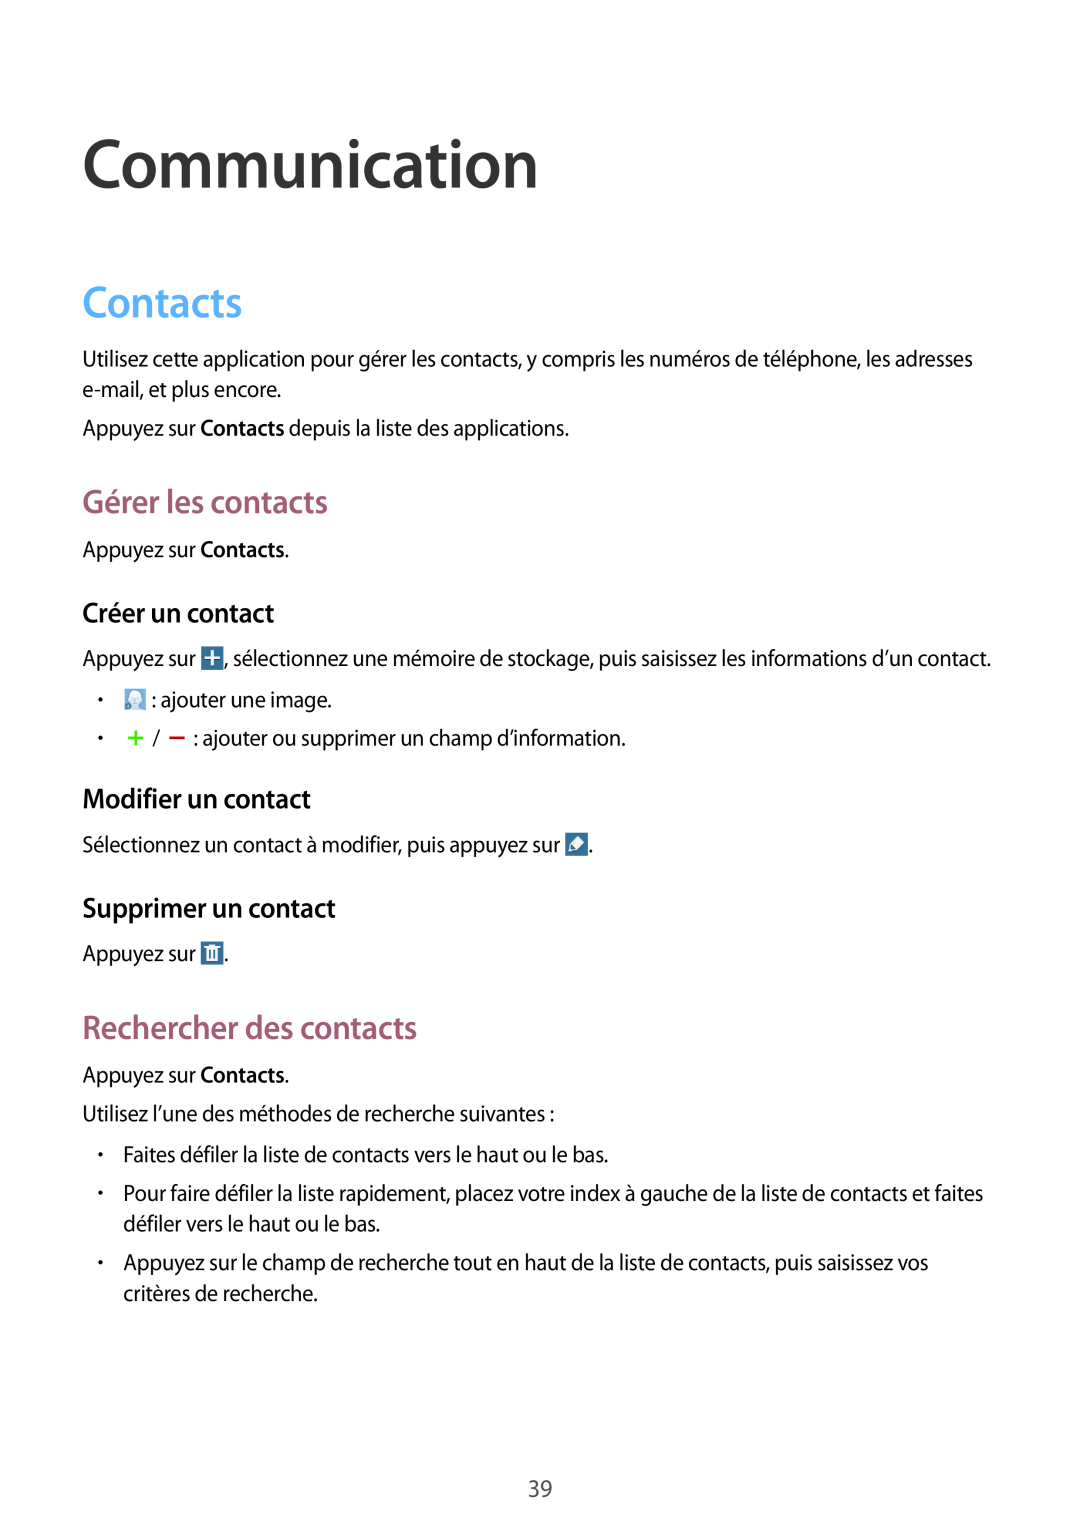 Samsung SM-T530NZWEXEF manual Communication, Contacts, Gérer les contacts, Rechercher des contacts, Créer un contact 